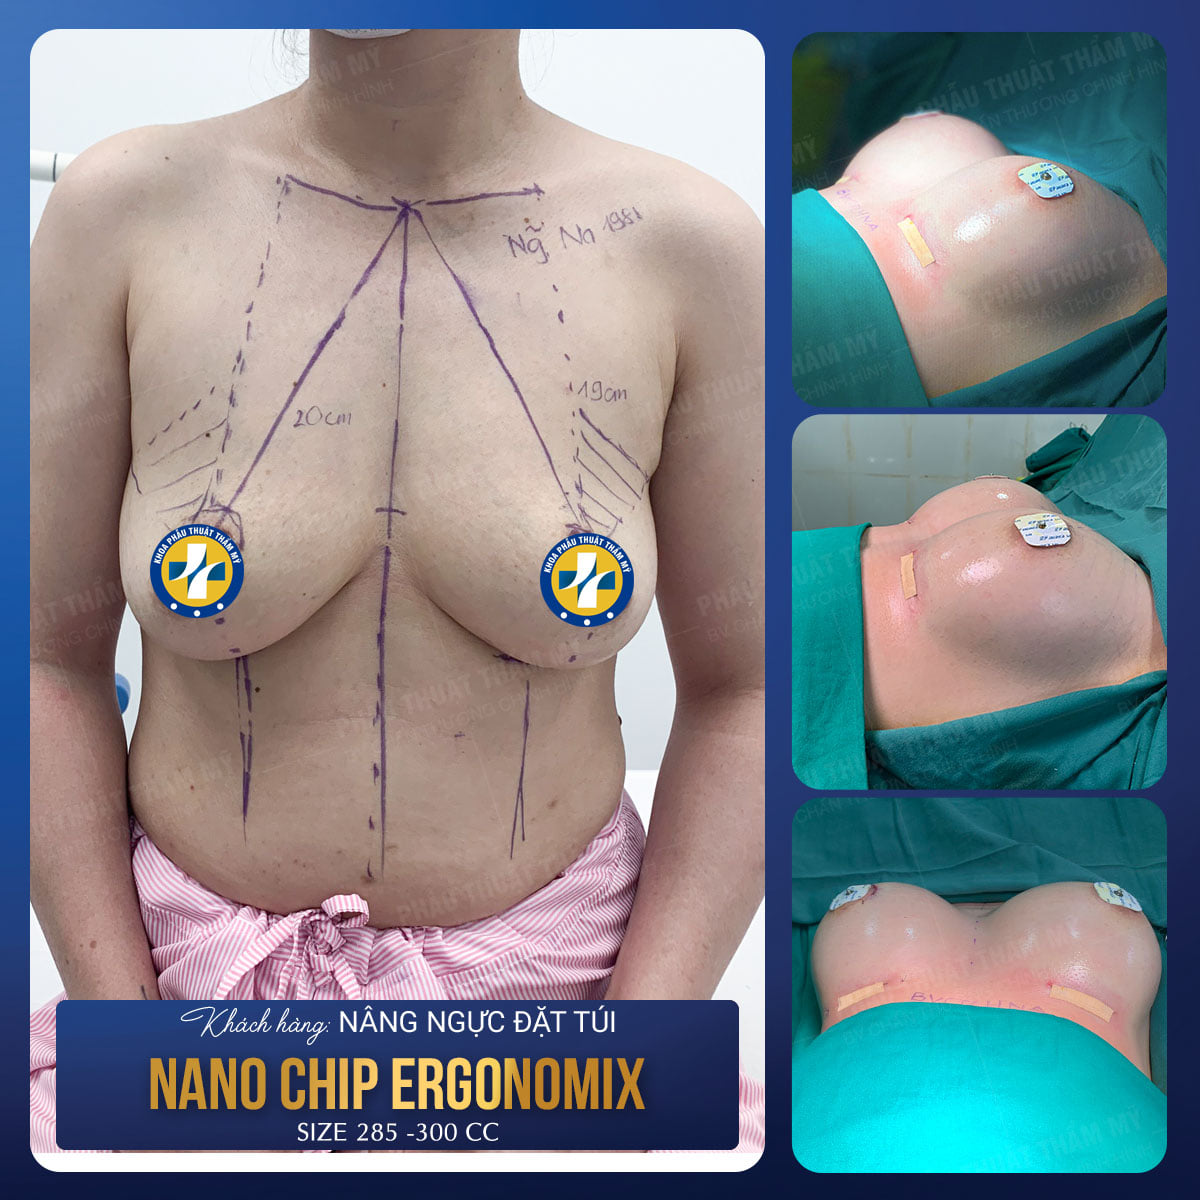 Khoa phẫu thuật tạo hình thẩm mỹ – Bv. Chấn thương chỉnh hình Nghệ An lựa chọn số 1 để nâng ngực đẹp và an toàn